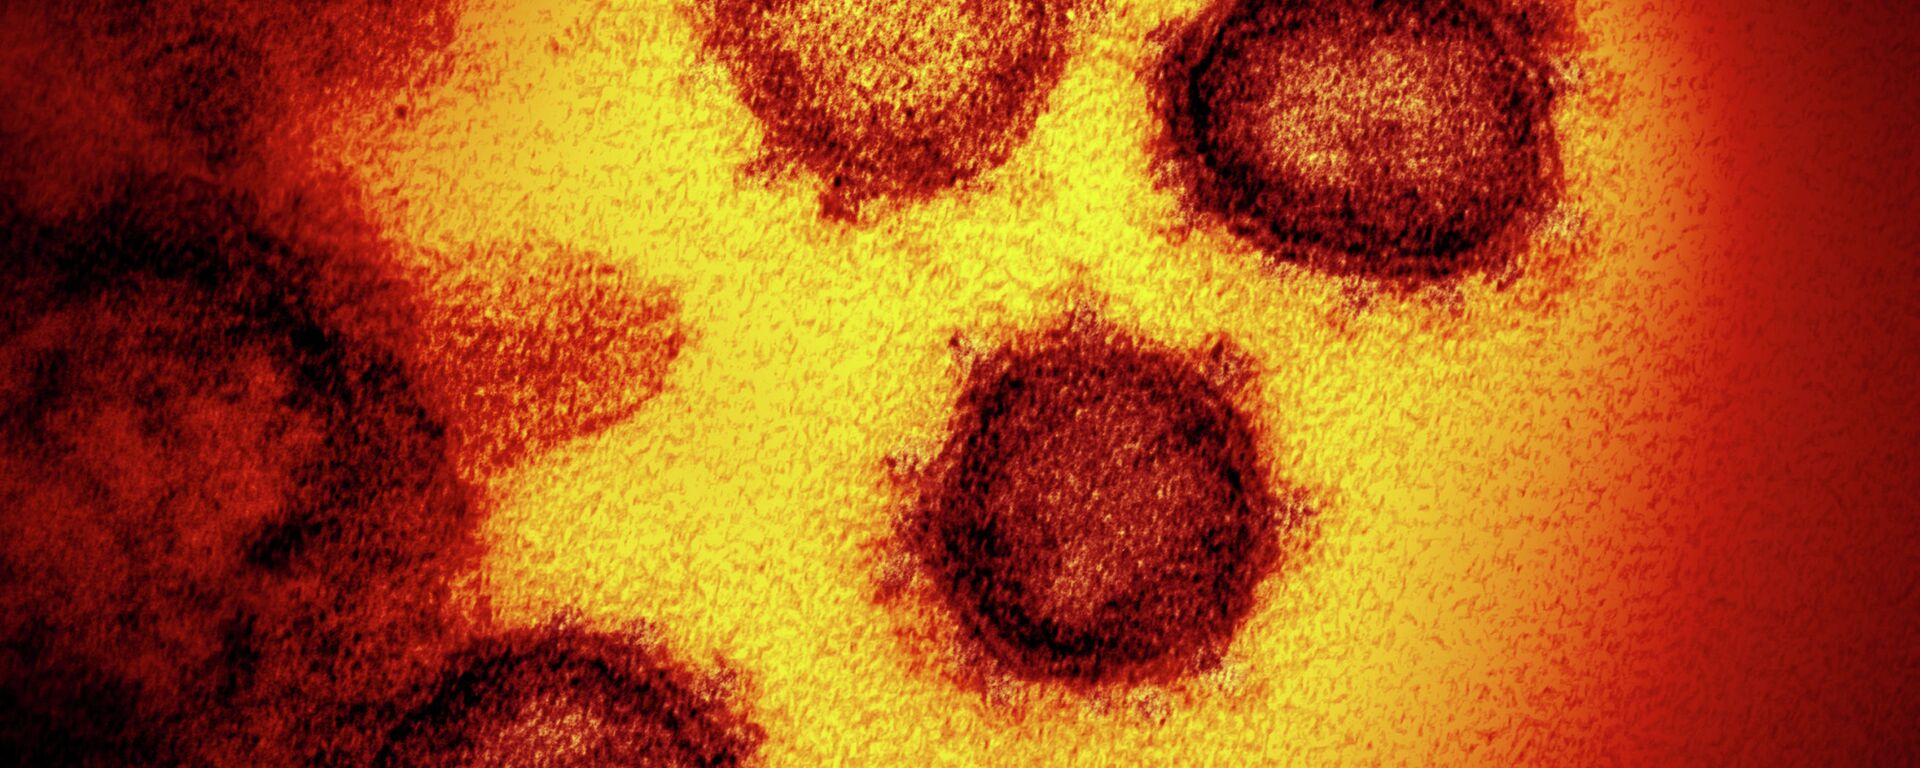 Микрофотография клеток, пораженных коронавирусом  - Sputnik Қазақстан, 1920, 04.12.2021